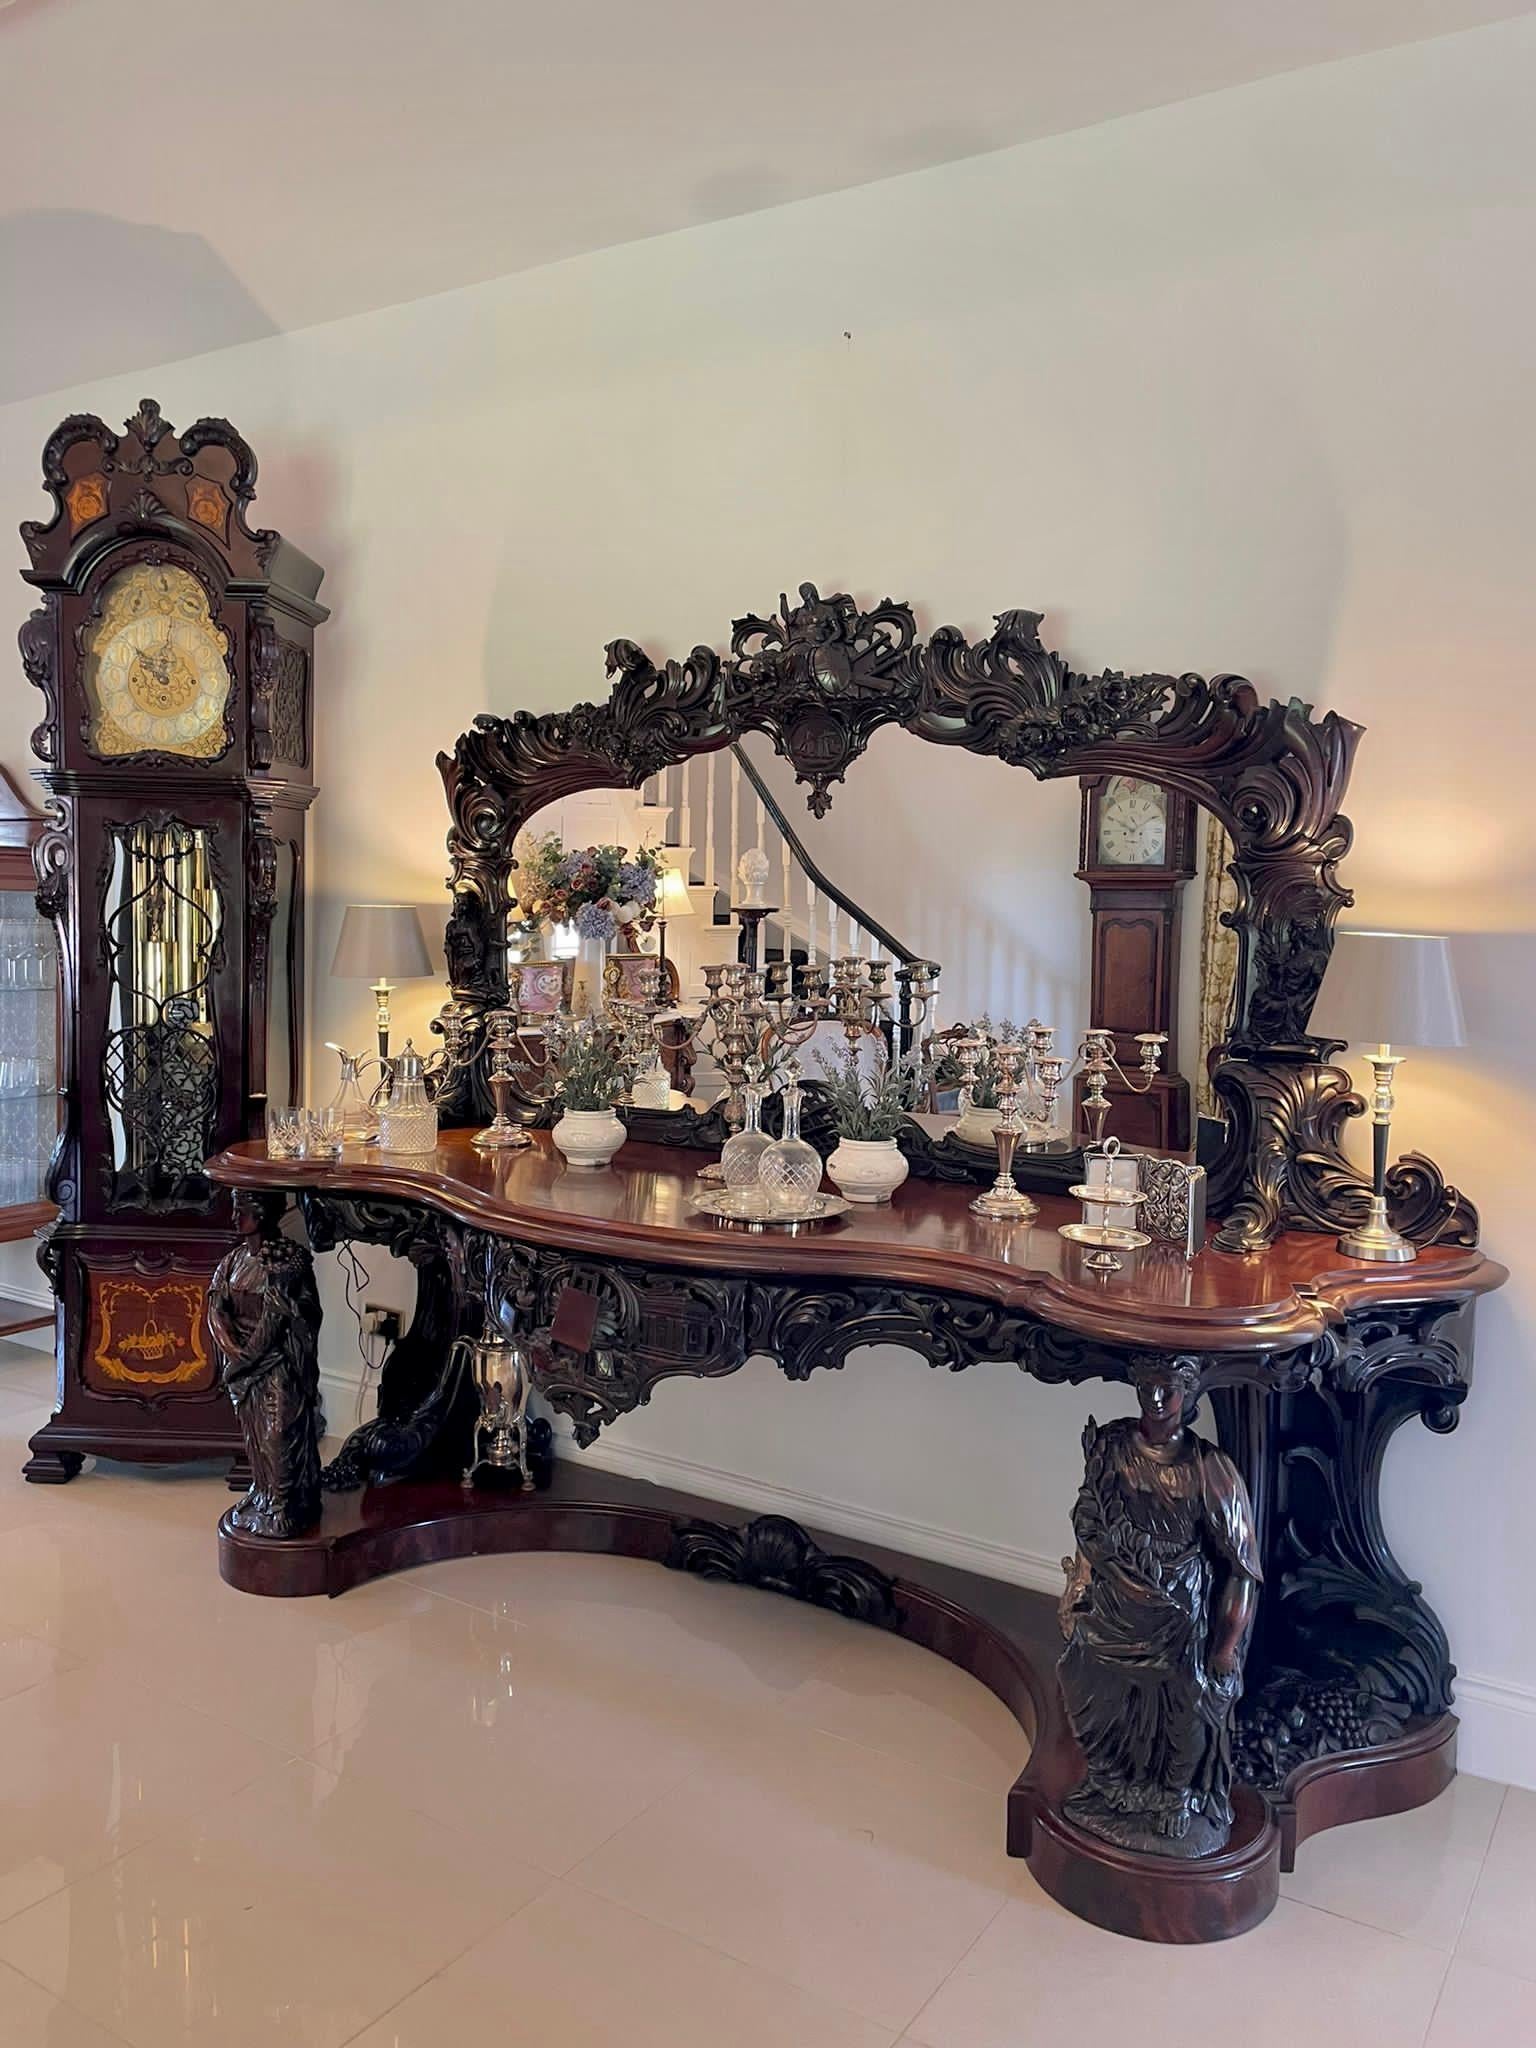 Dies ist ein wichtiges Beispiel für britische Möbel und Geschichte, bei dem eine große Spiegelplatte in einen hochwertigen, mit Akanthus geschnitzten und geschwungenen Rahmen eingefasst ist. Er wird von einer dekorativen Pflaume gekrönt, die